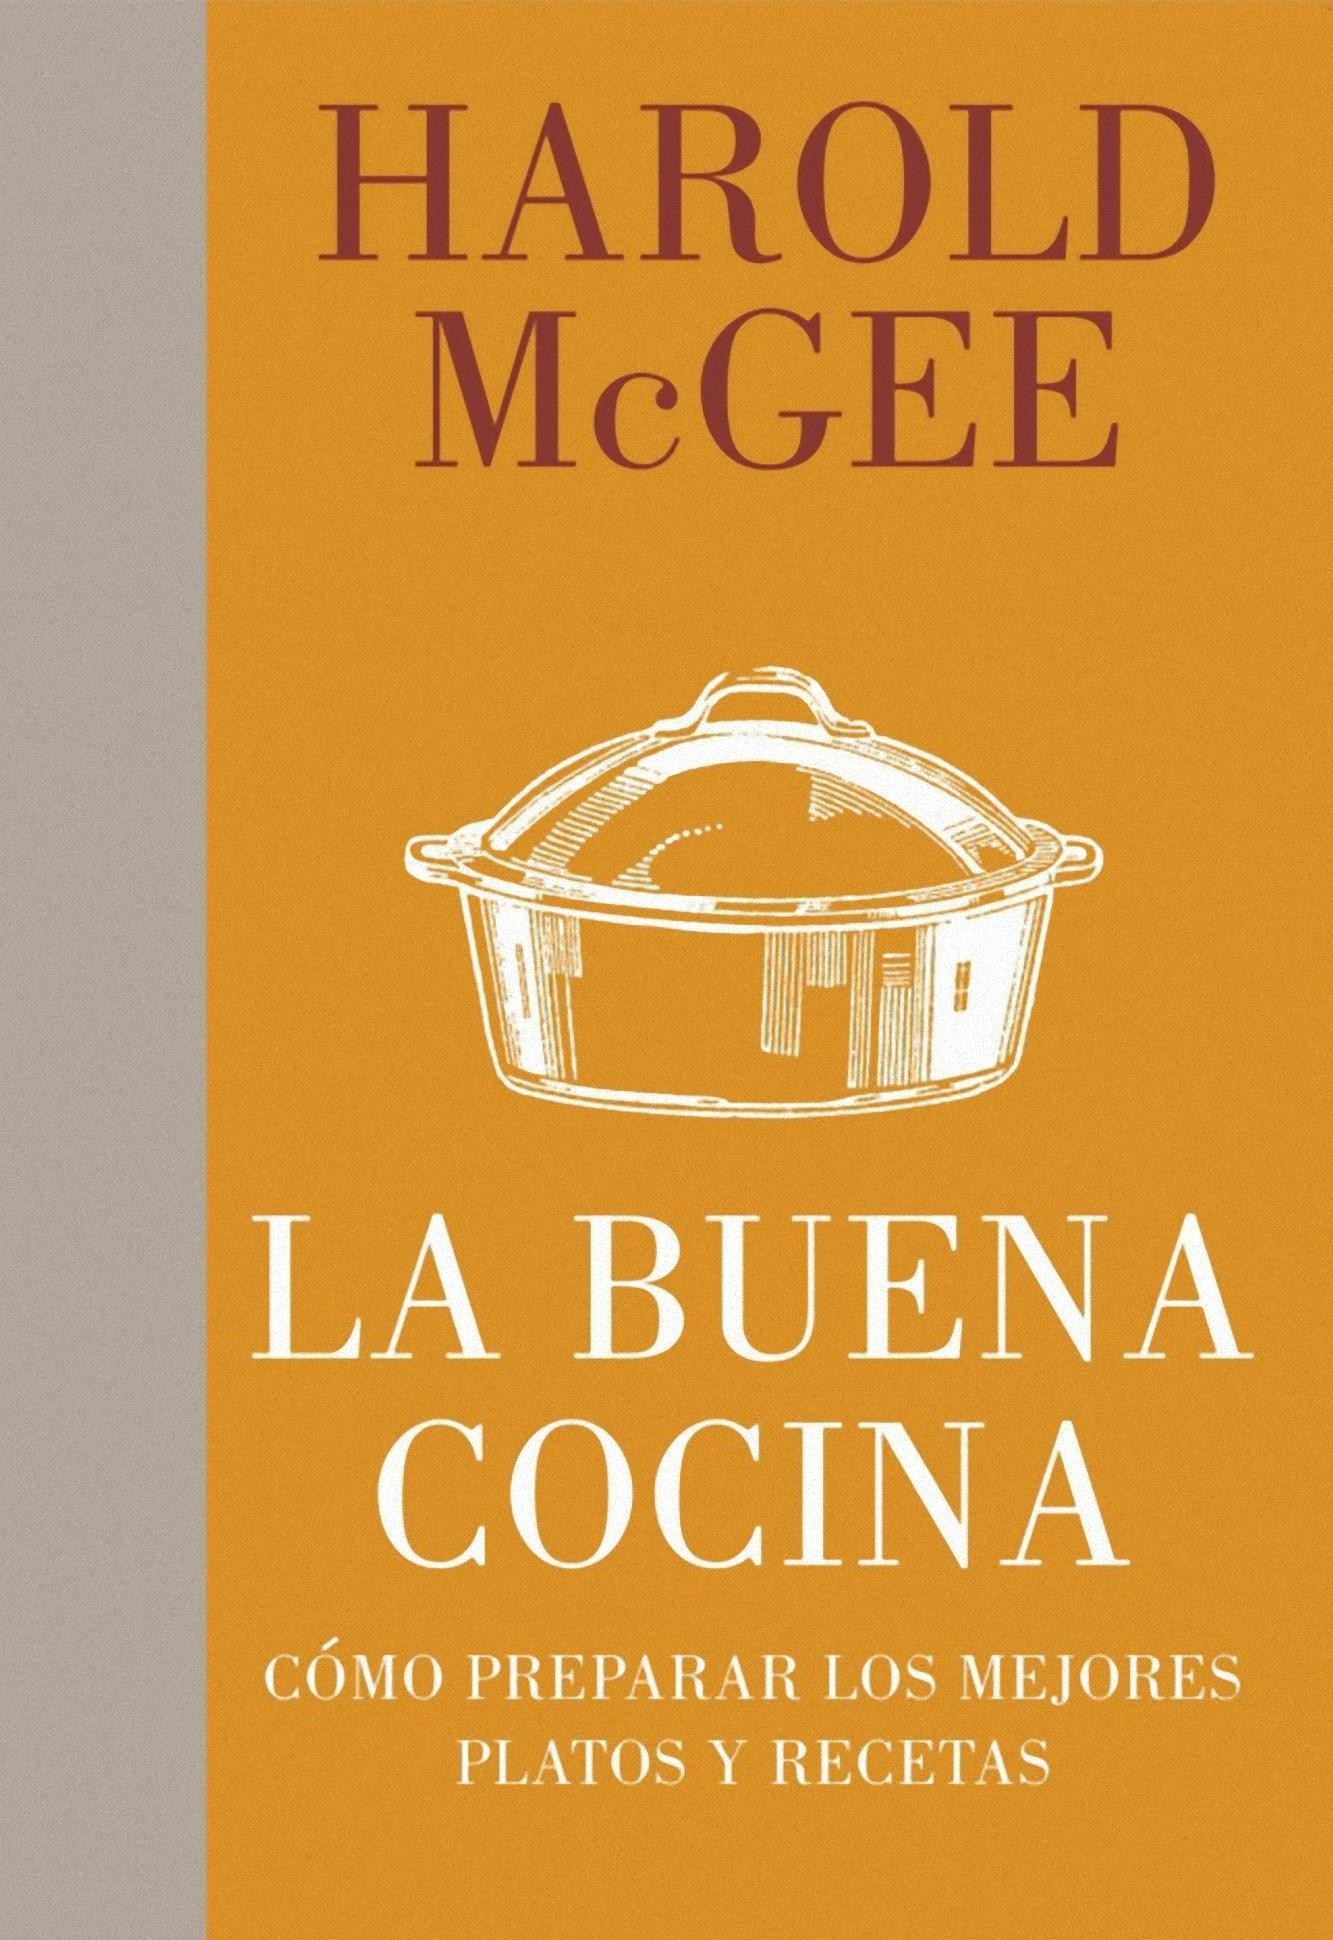 42 Best Images Libro De Cocina Argentina - Chocotorta argentina: con chocolinas Receta de la cocina ...